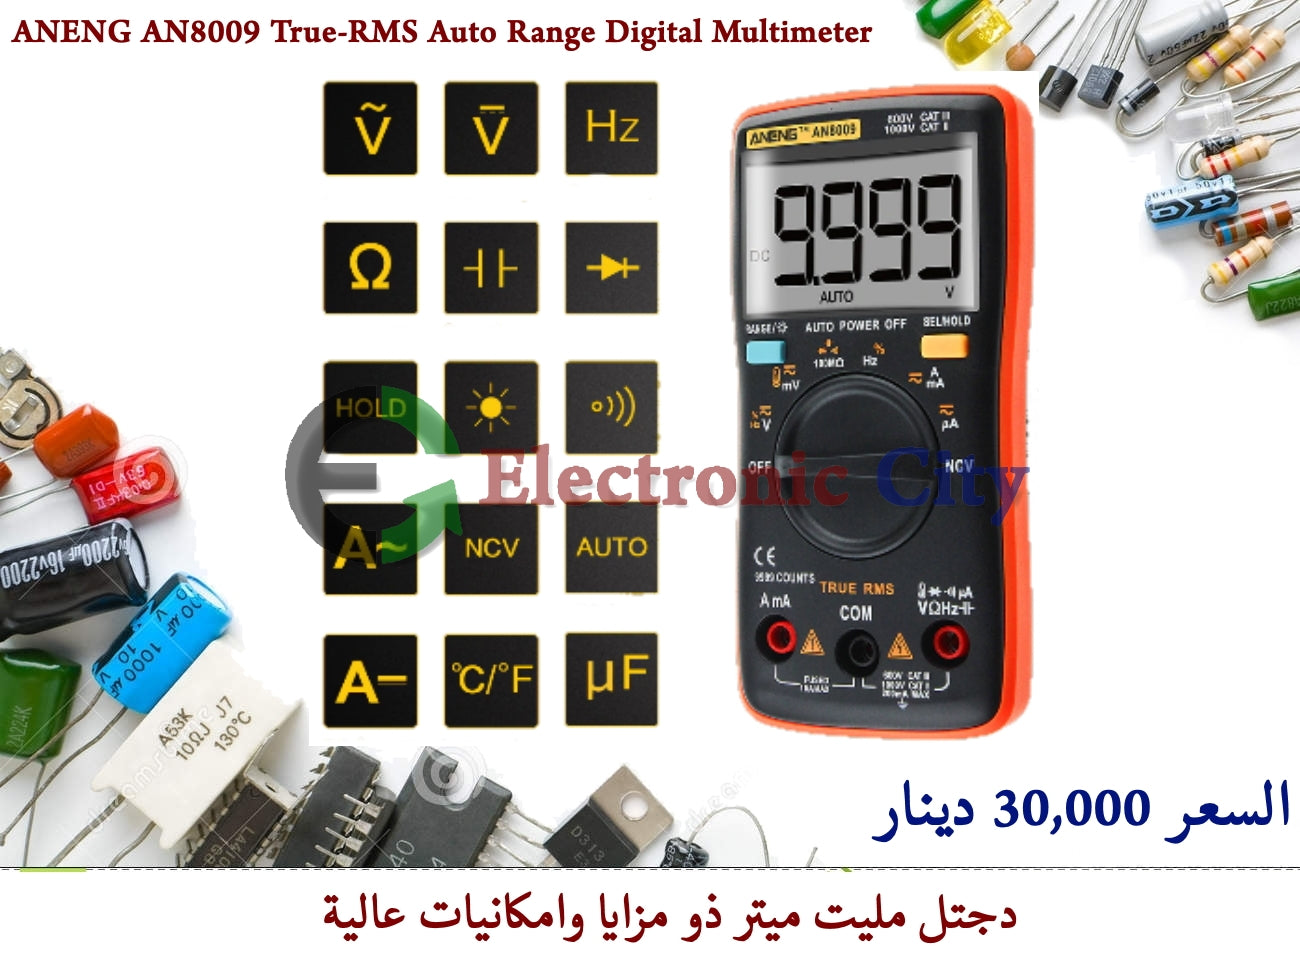 ANENG AN8009 True-RMS Auto Range Digital Multimeter